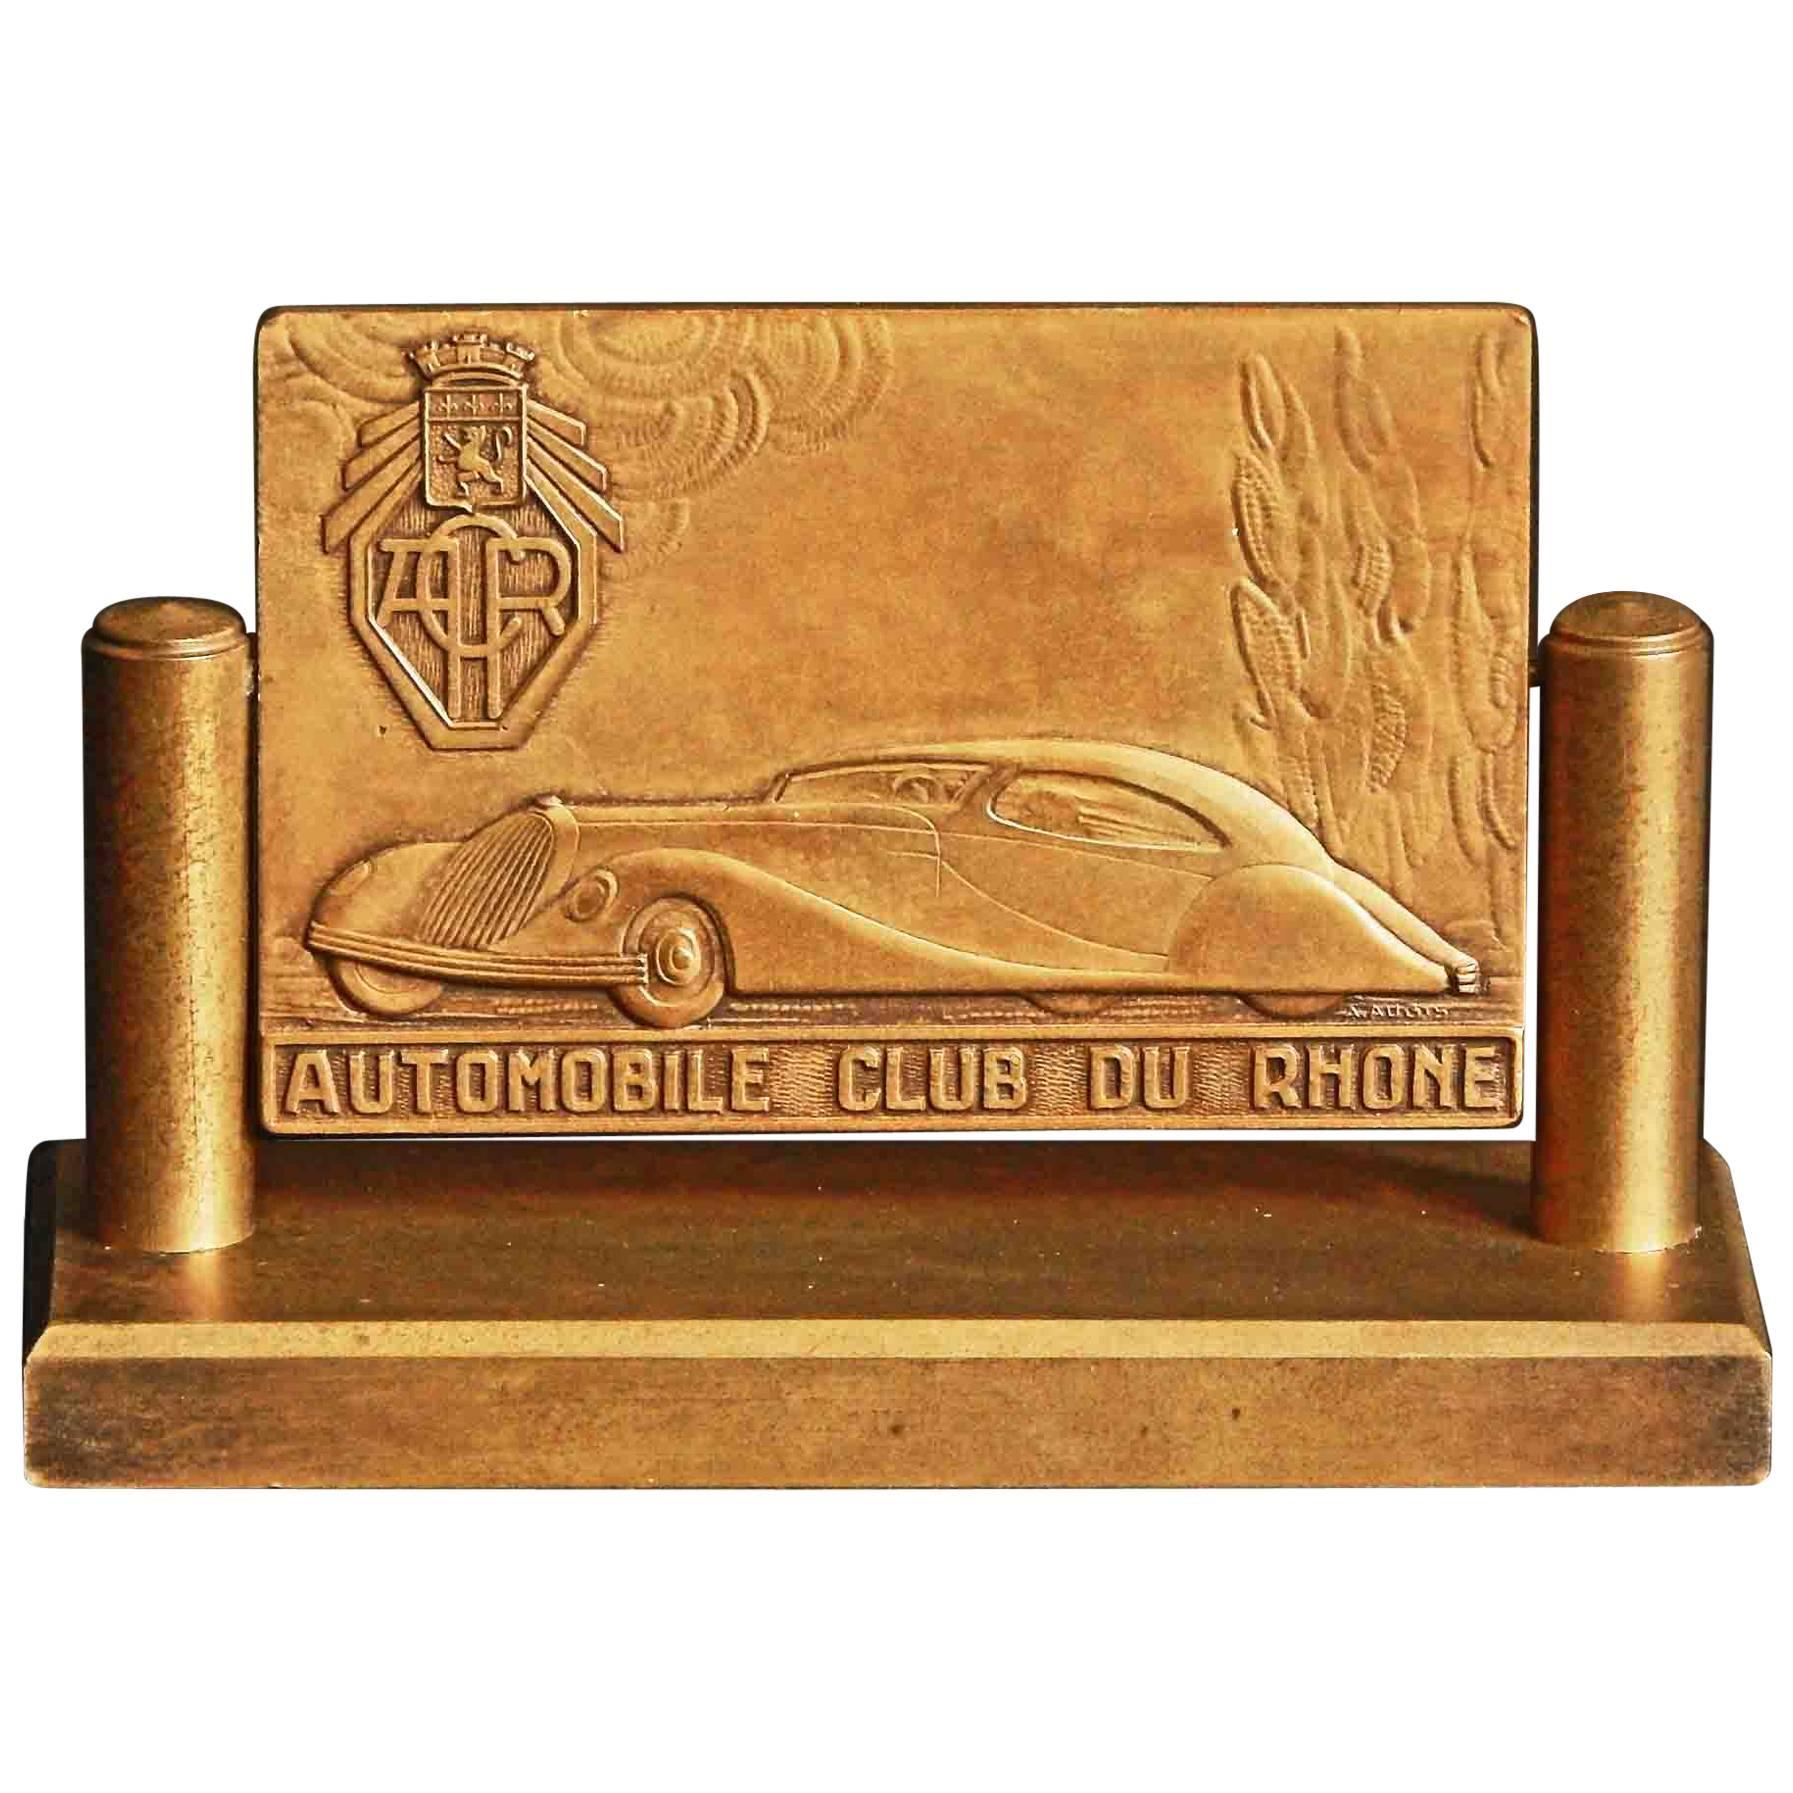 "Automobile Club of Rhone, " Art Deco Bronze Desk Accessory, Talbot-Lago